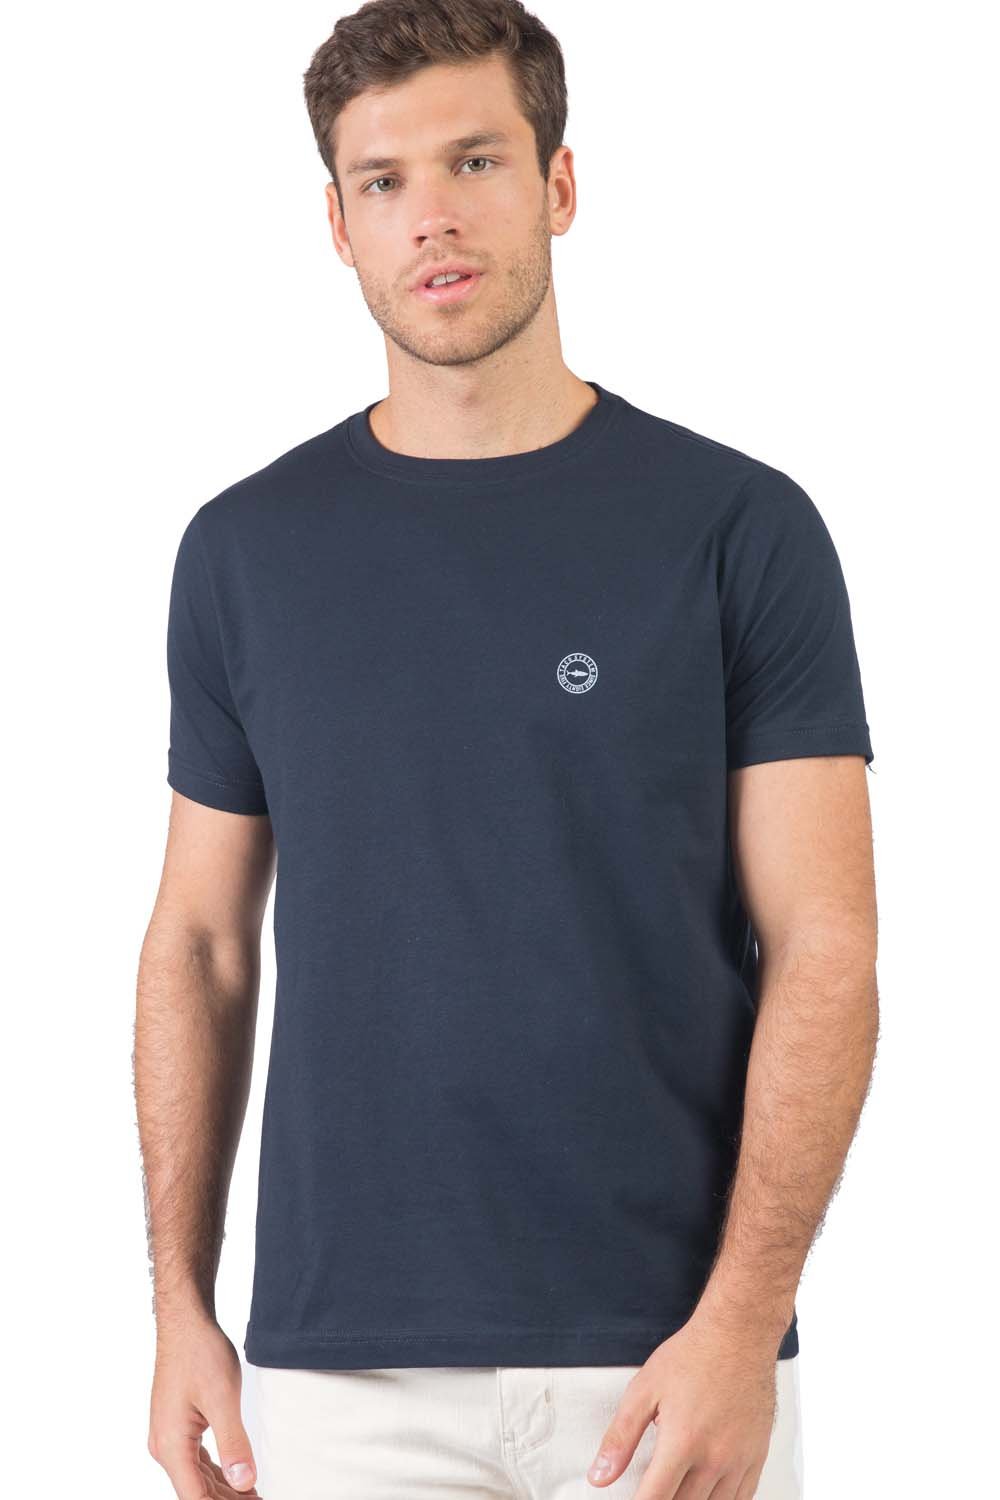 T-Shirt Básica Fit Tubarão Az Mar